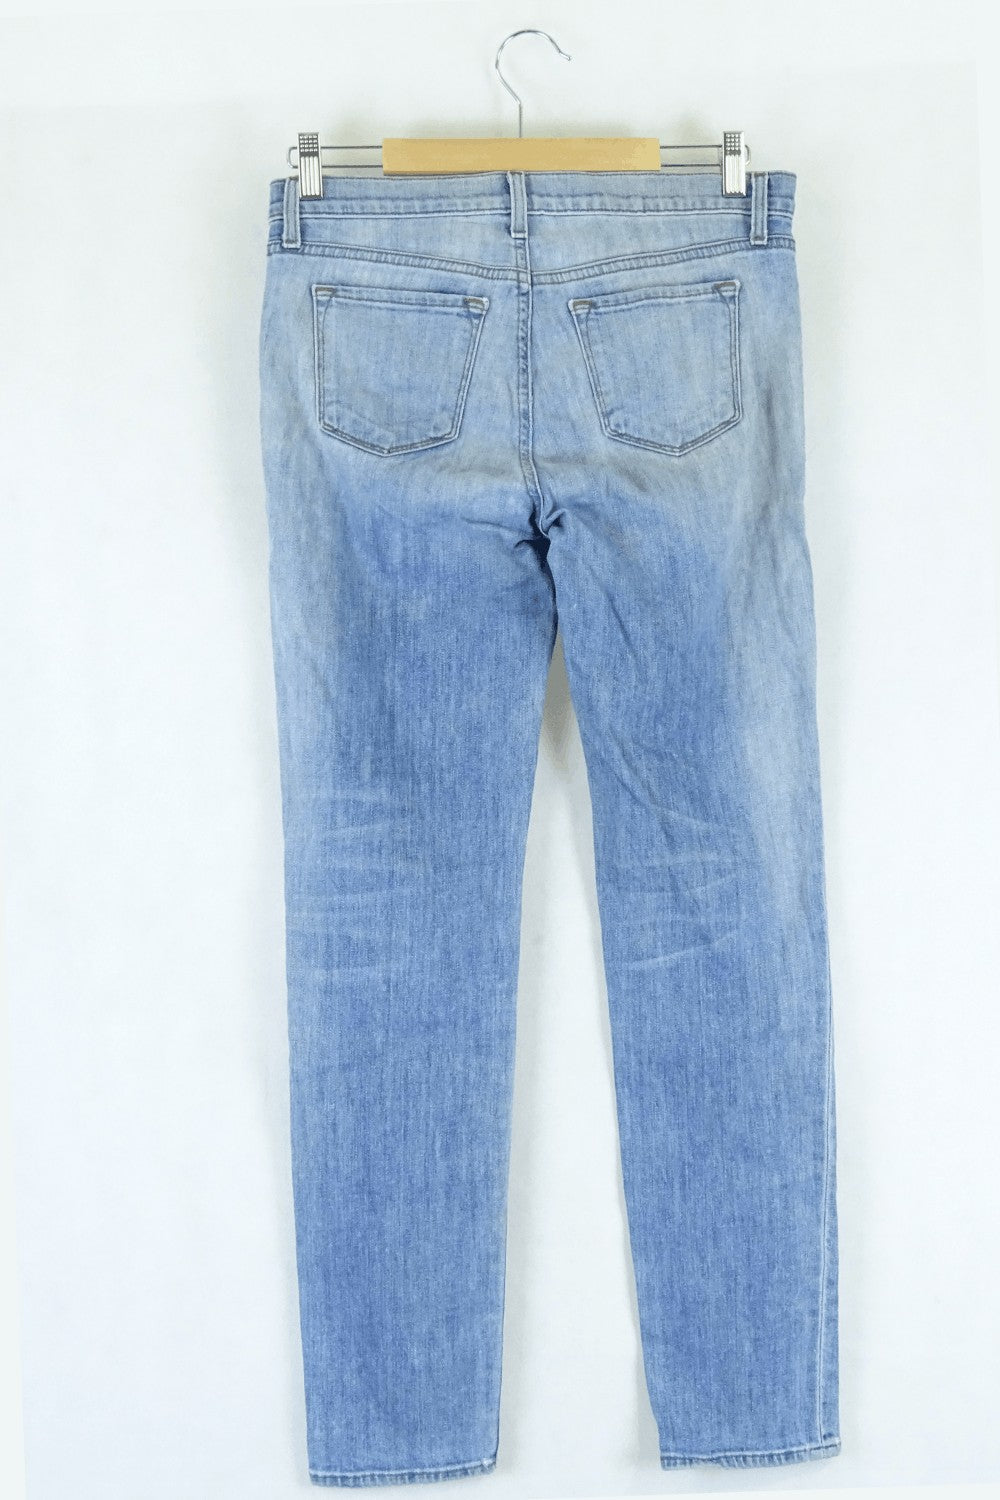 Jbrand Lightwash Denim Jeans 25